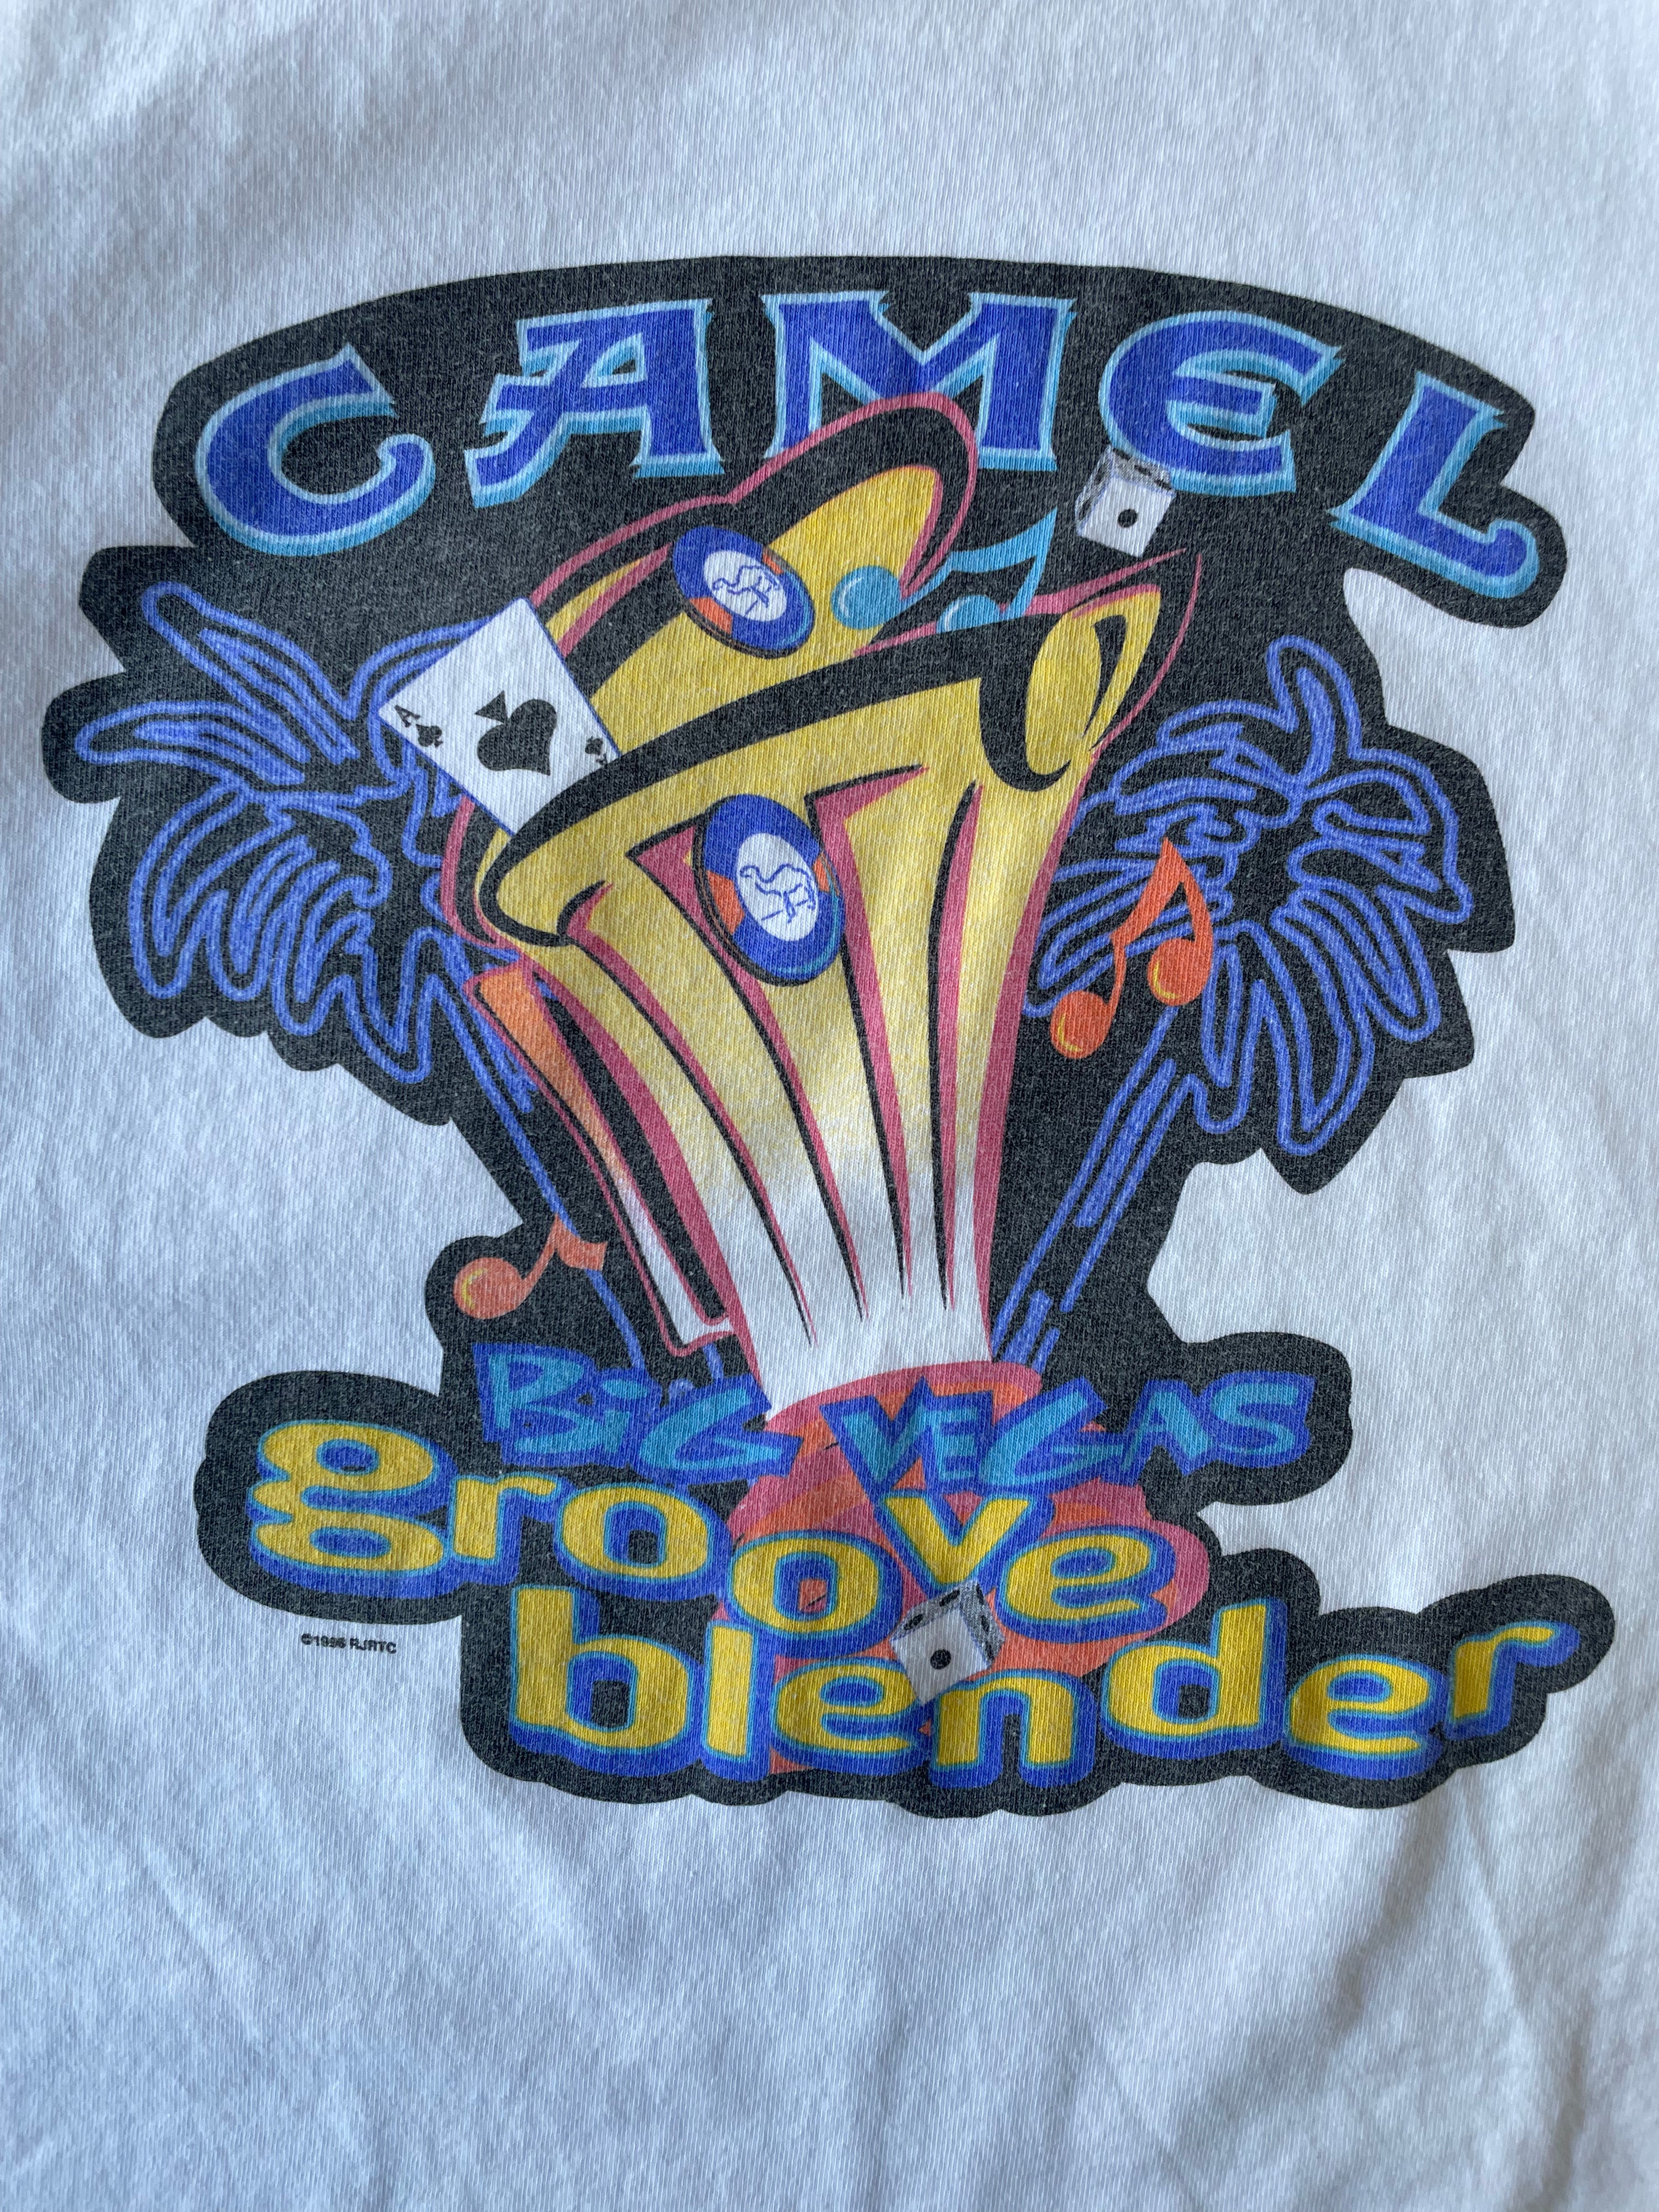 1996 Camel Cigarettes T-Shirt - XL